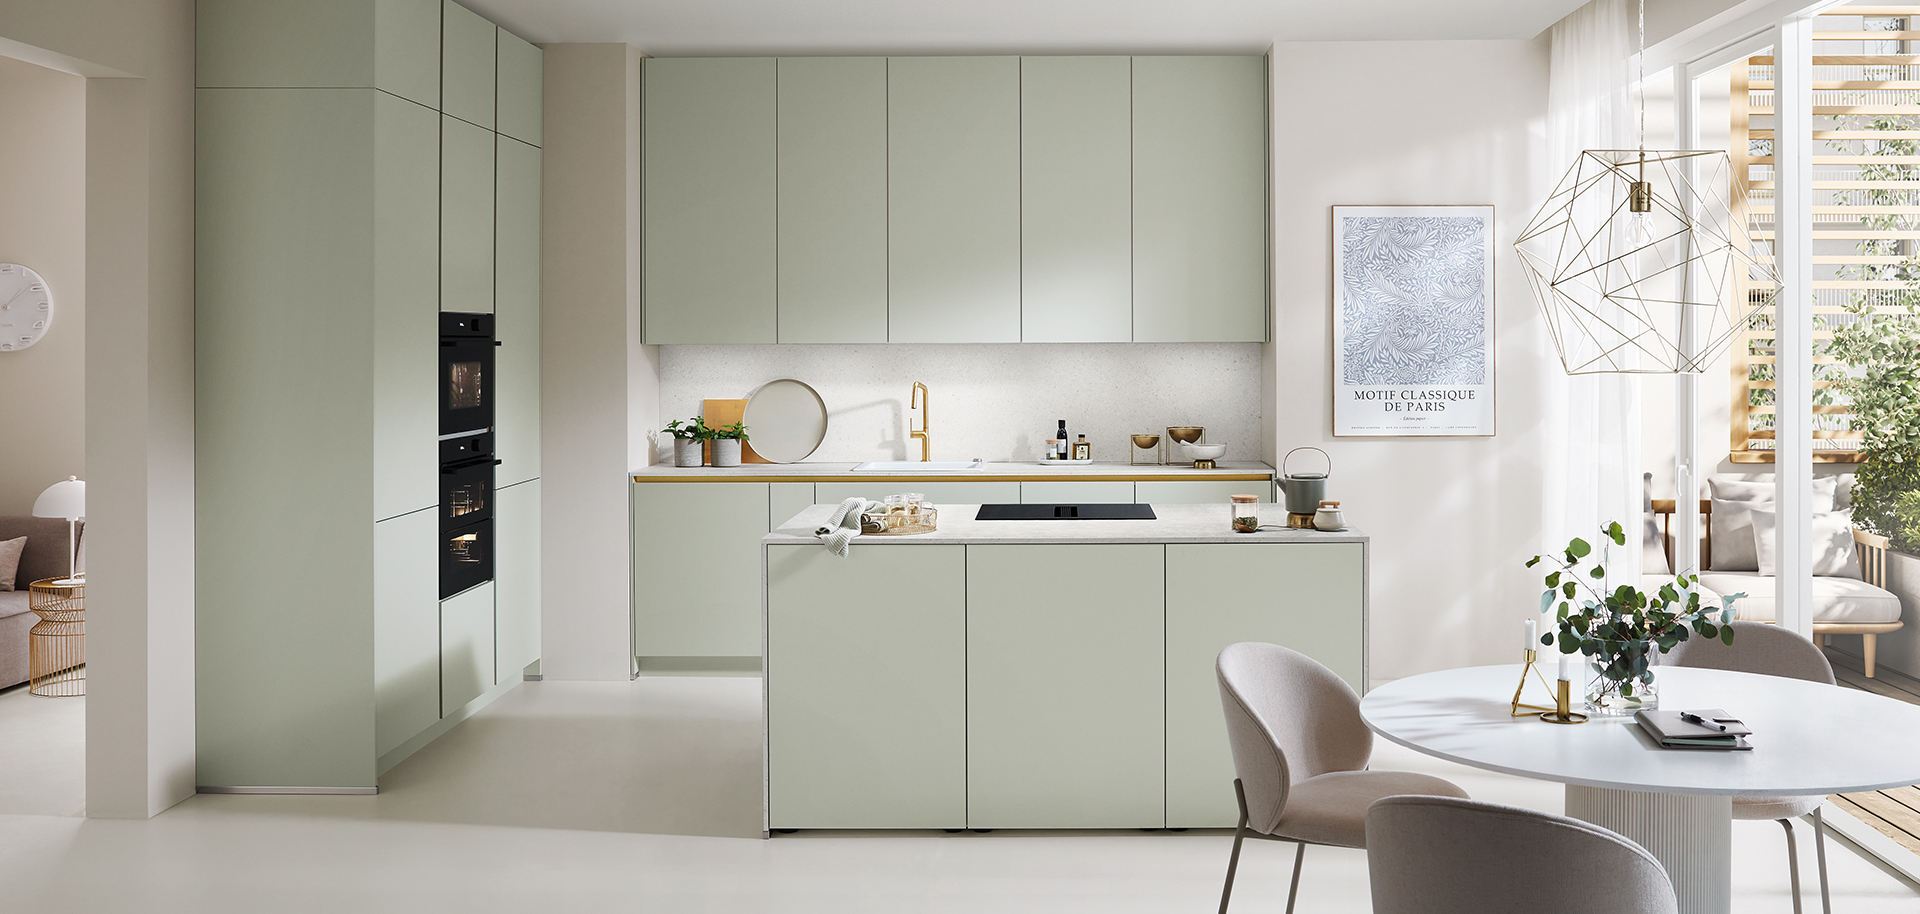 Cucina moderna con mobili verde pastello, elettrodomestici integrati e un'accogliente area pranzo che presenta un design minimalista e un'atmosfera luminosa e ariosa.